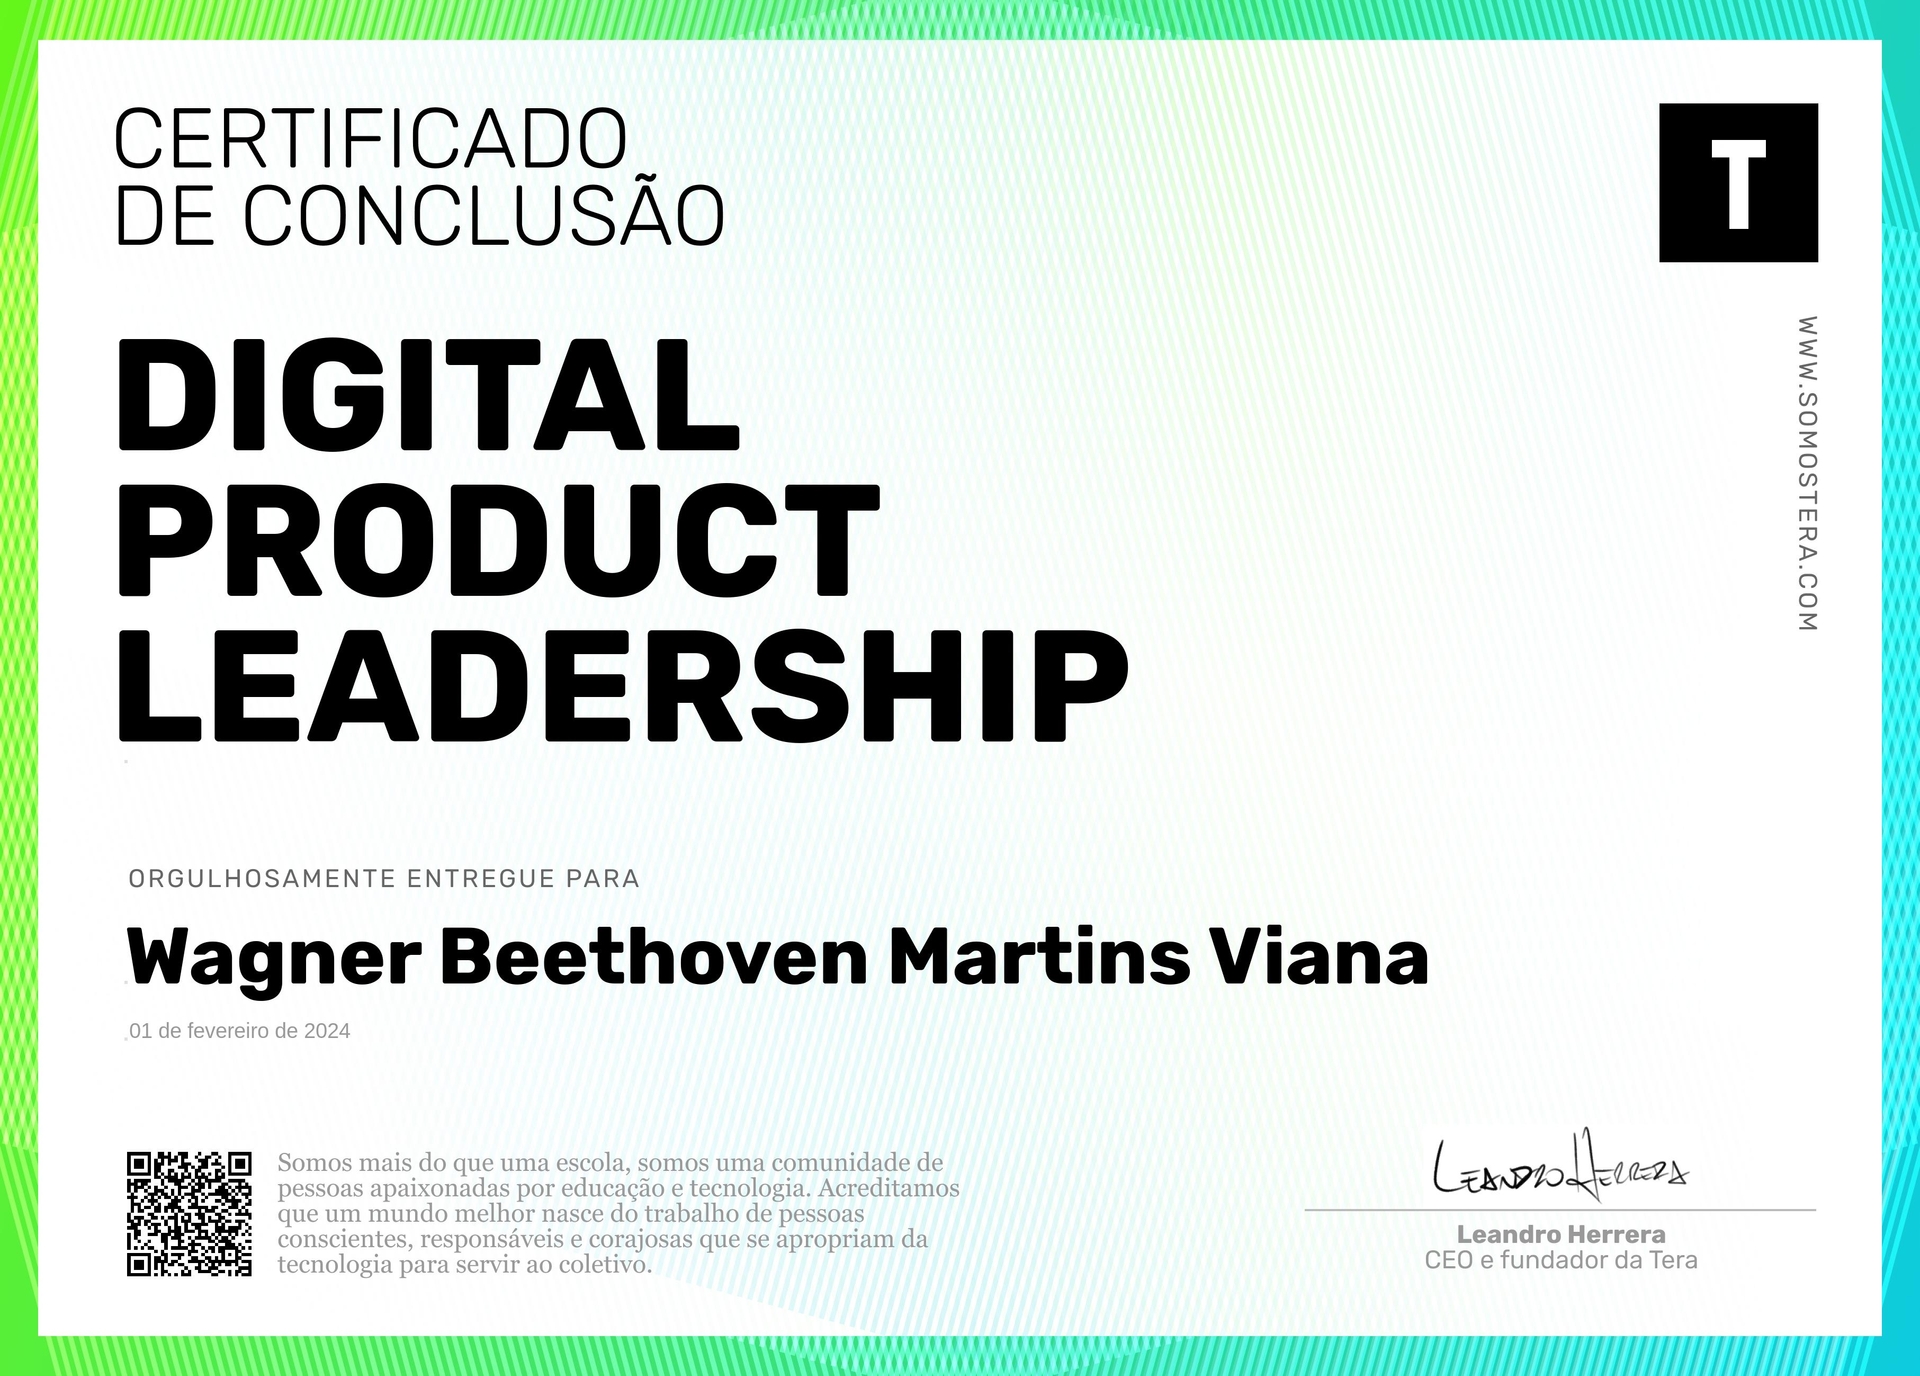 Certificado de Wagner Beethoven Martins Viana